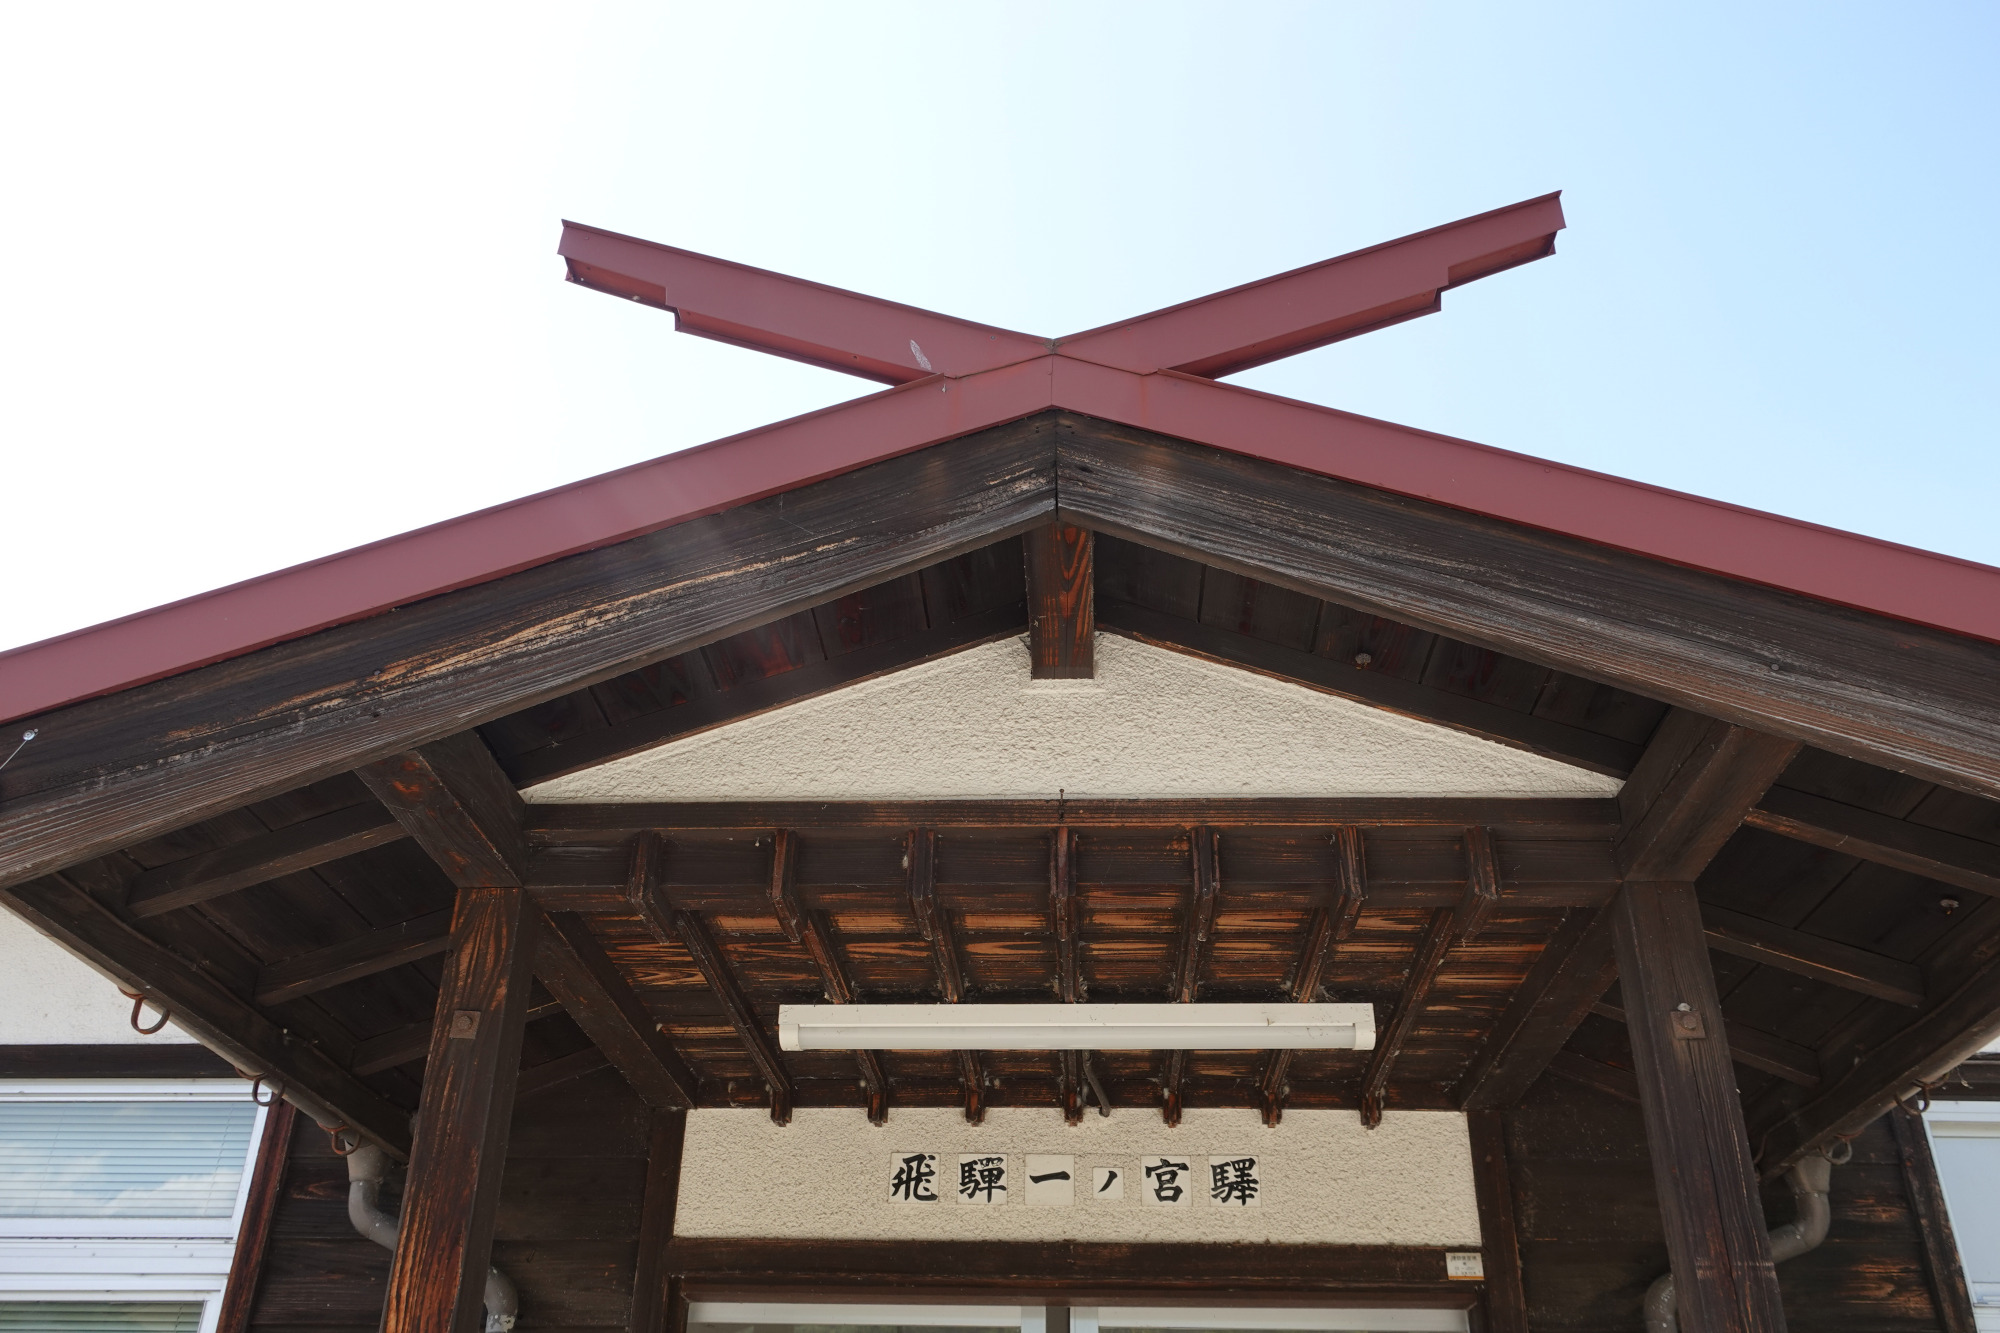 入口の屋根に「千木」が施されてあります。